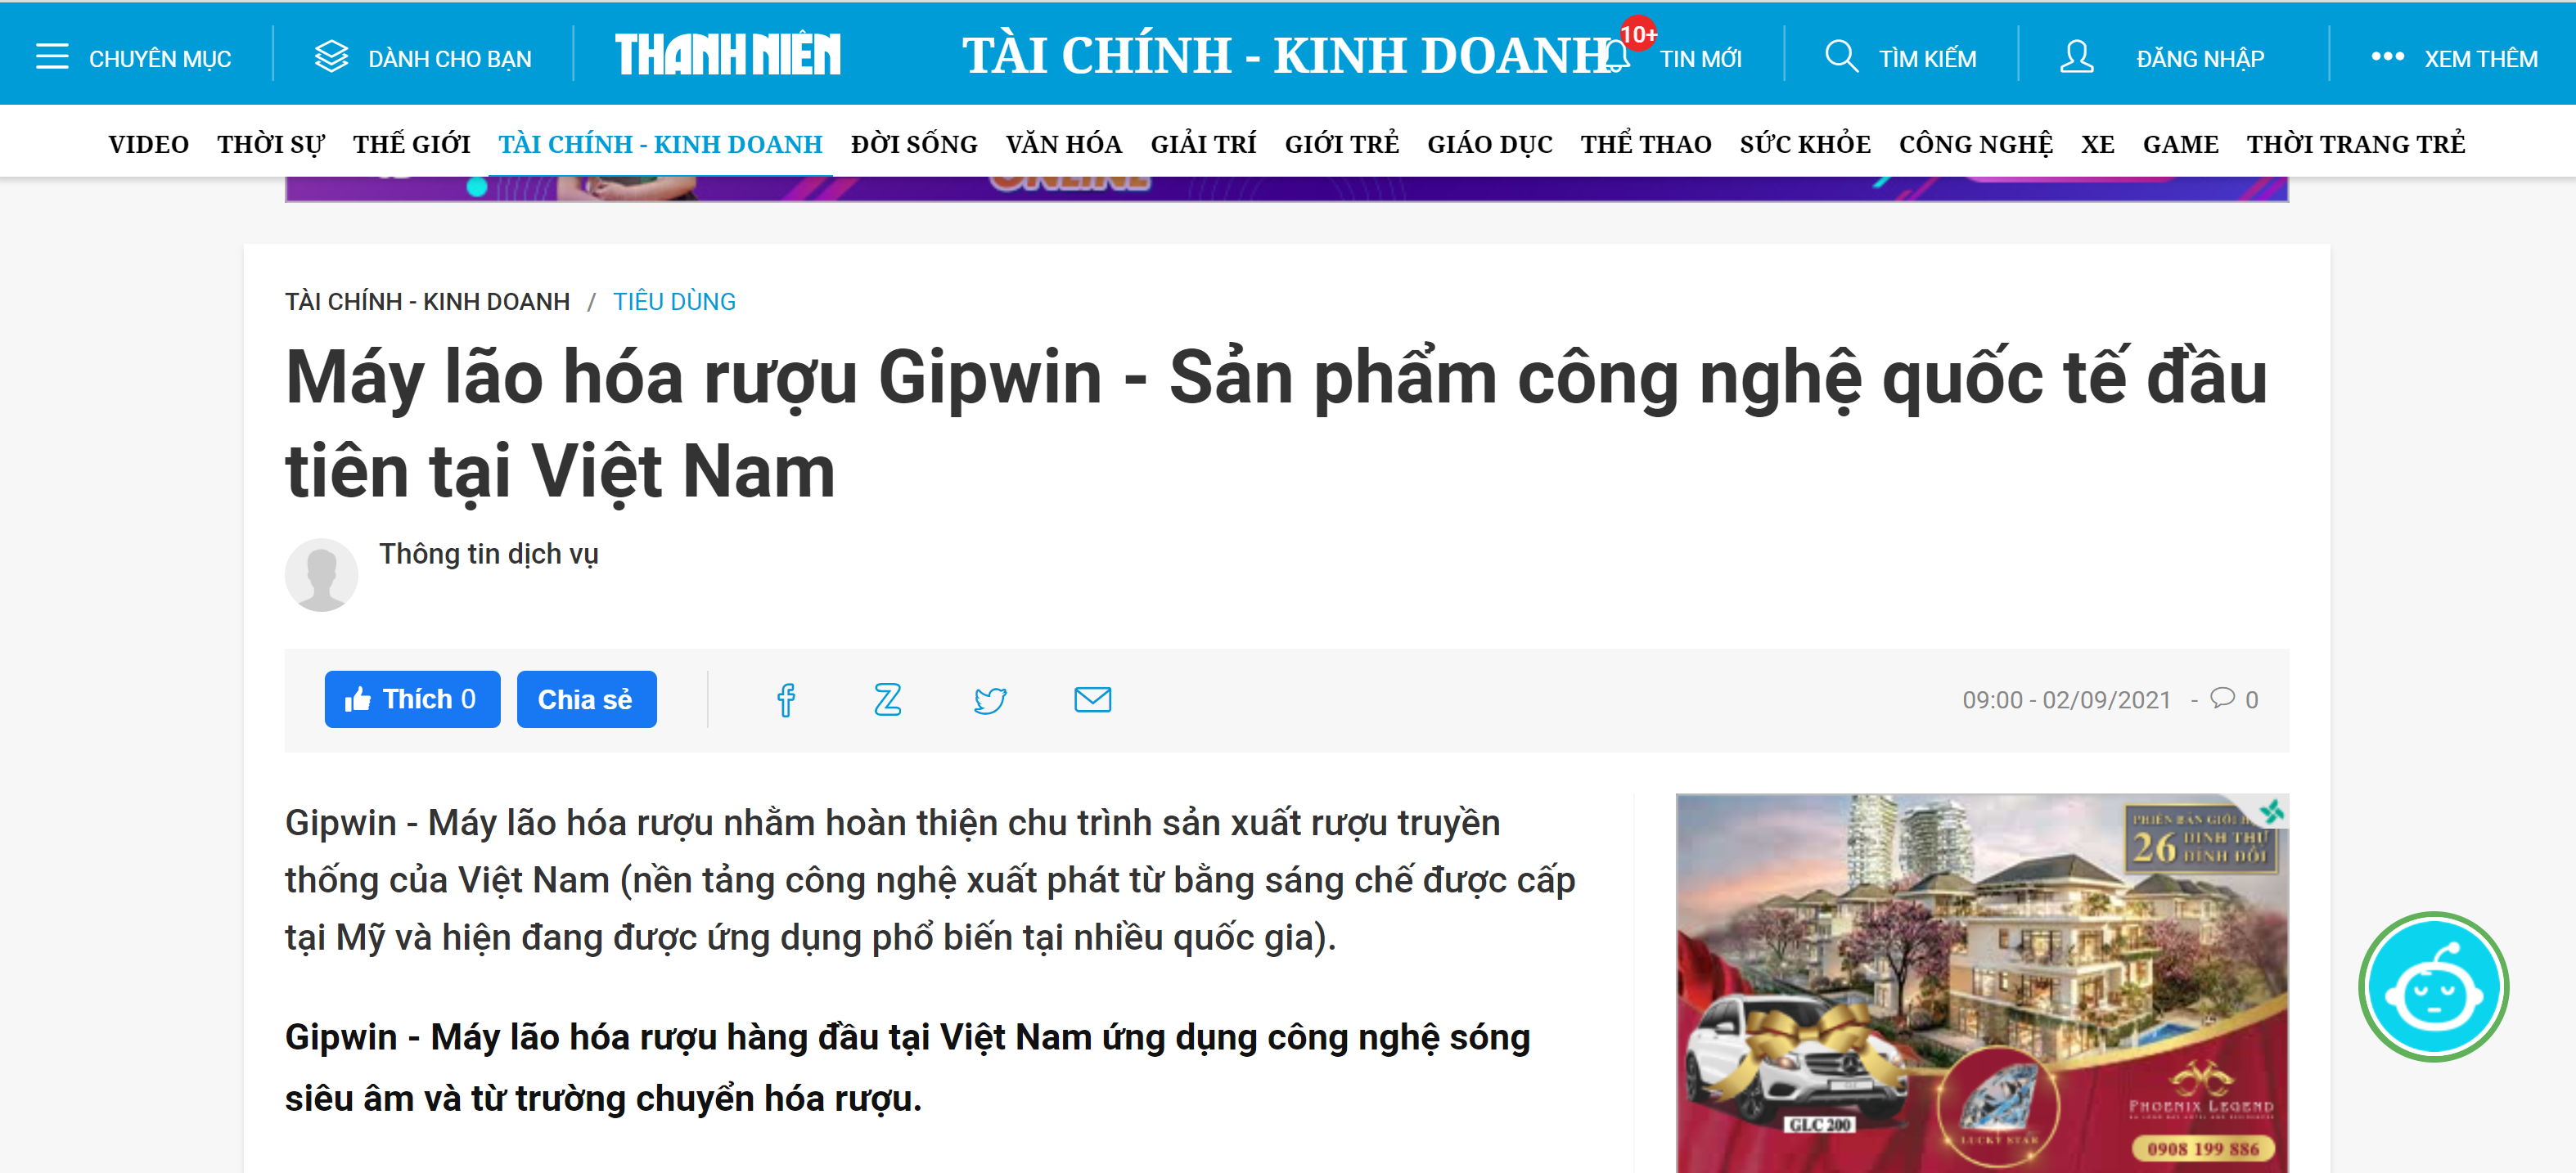 Báo Thanh Niên phân tích sản phẩm Máy lão hóa rượu Gipwin